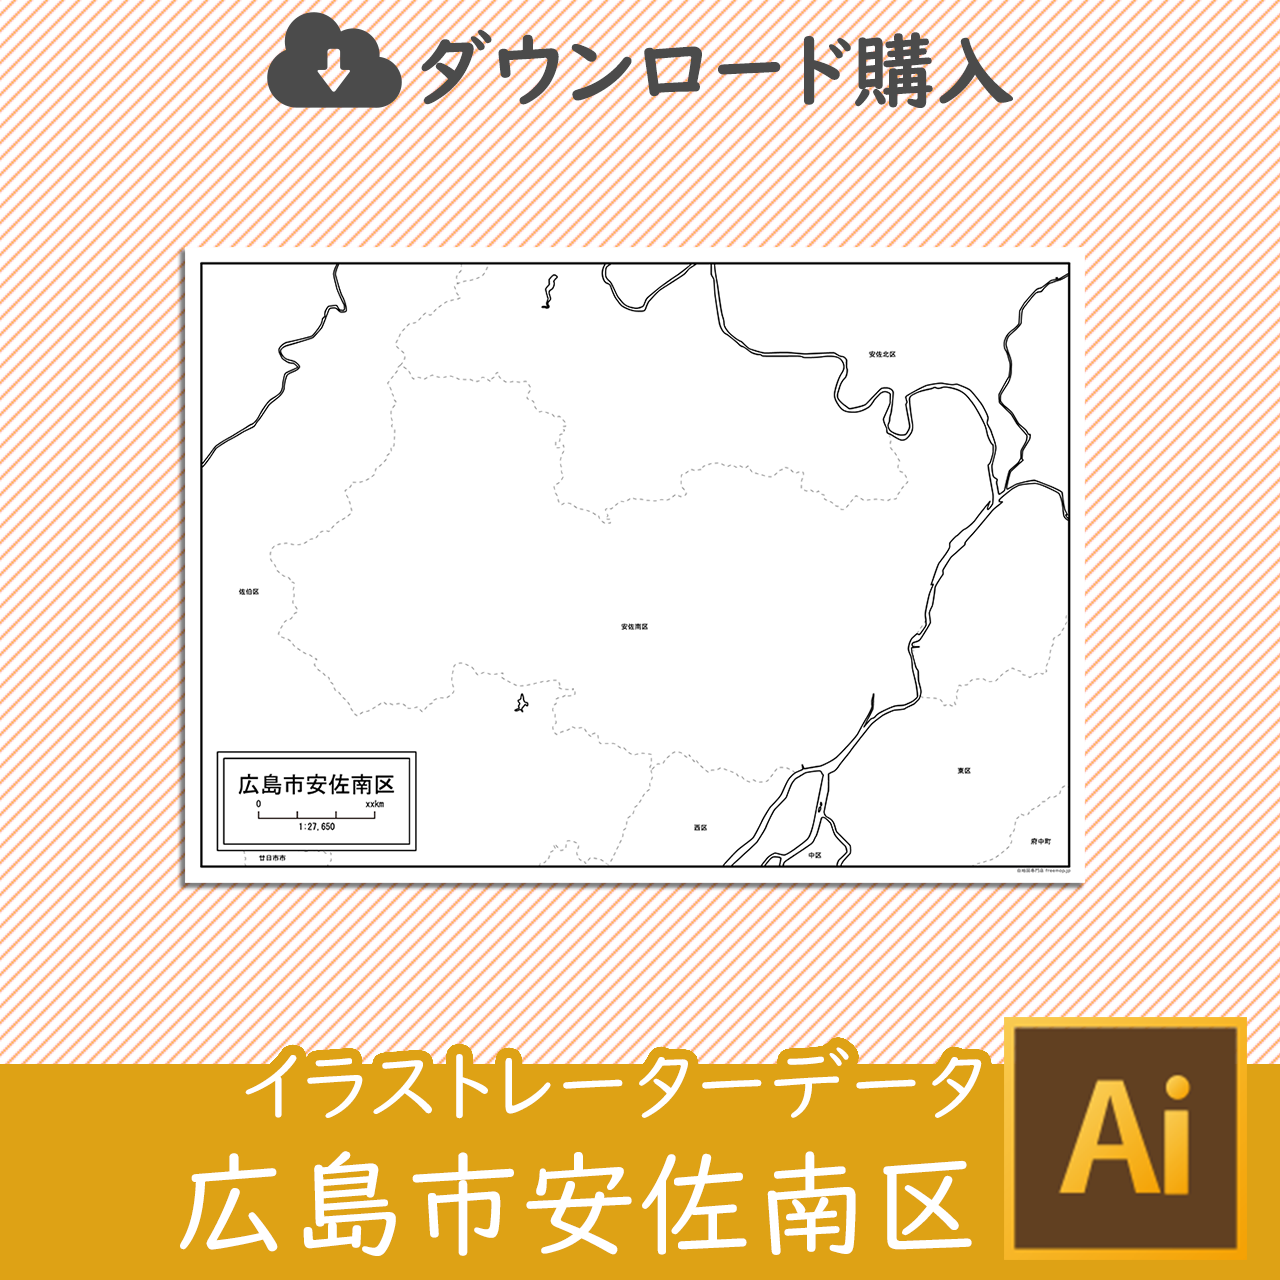 広島市安佐南区のaiデータのサムネイル画像